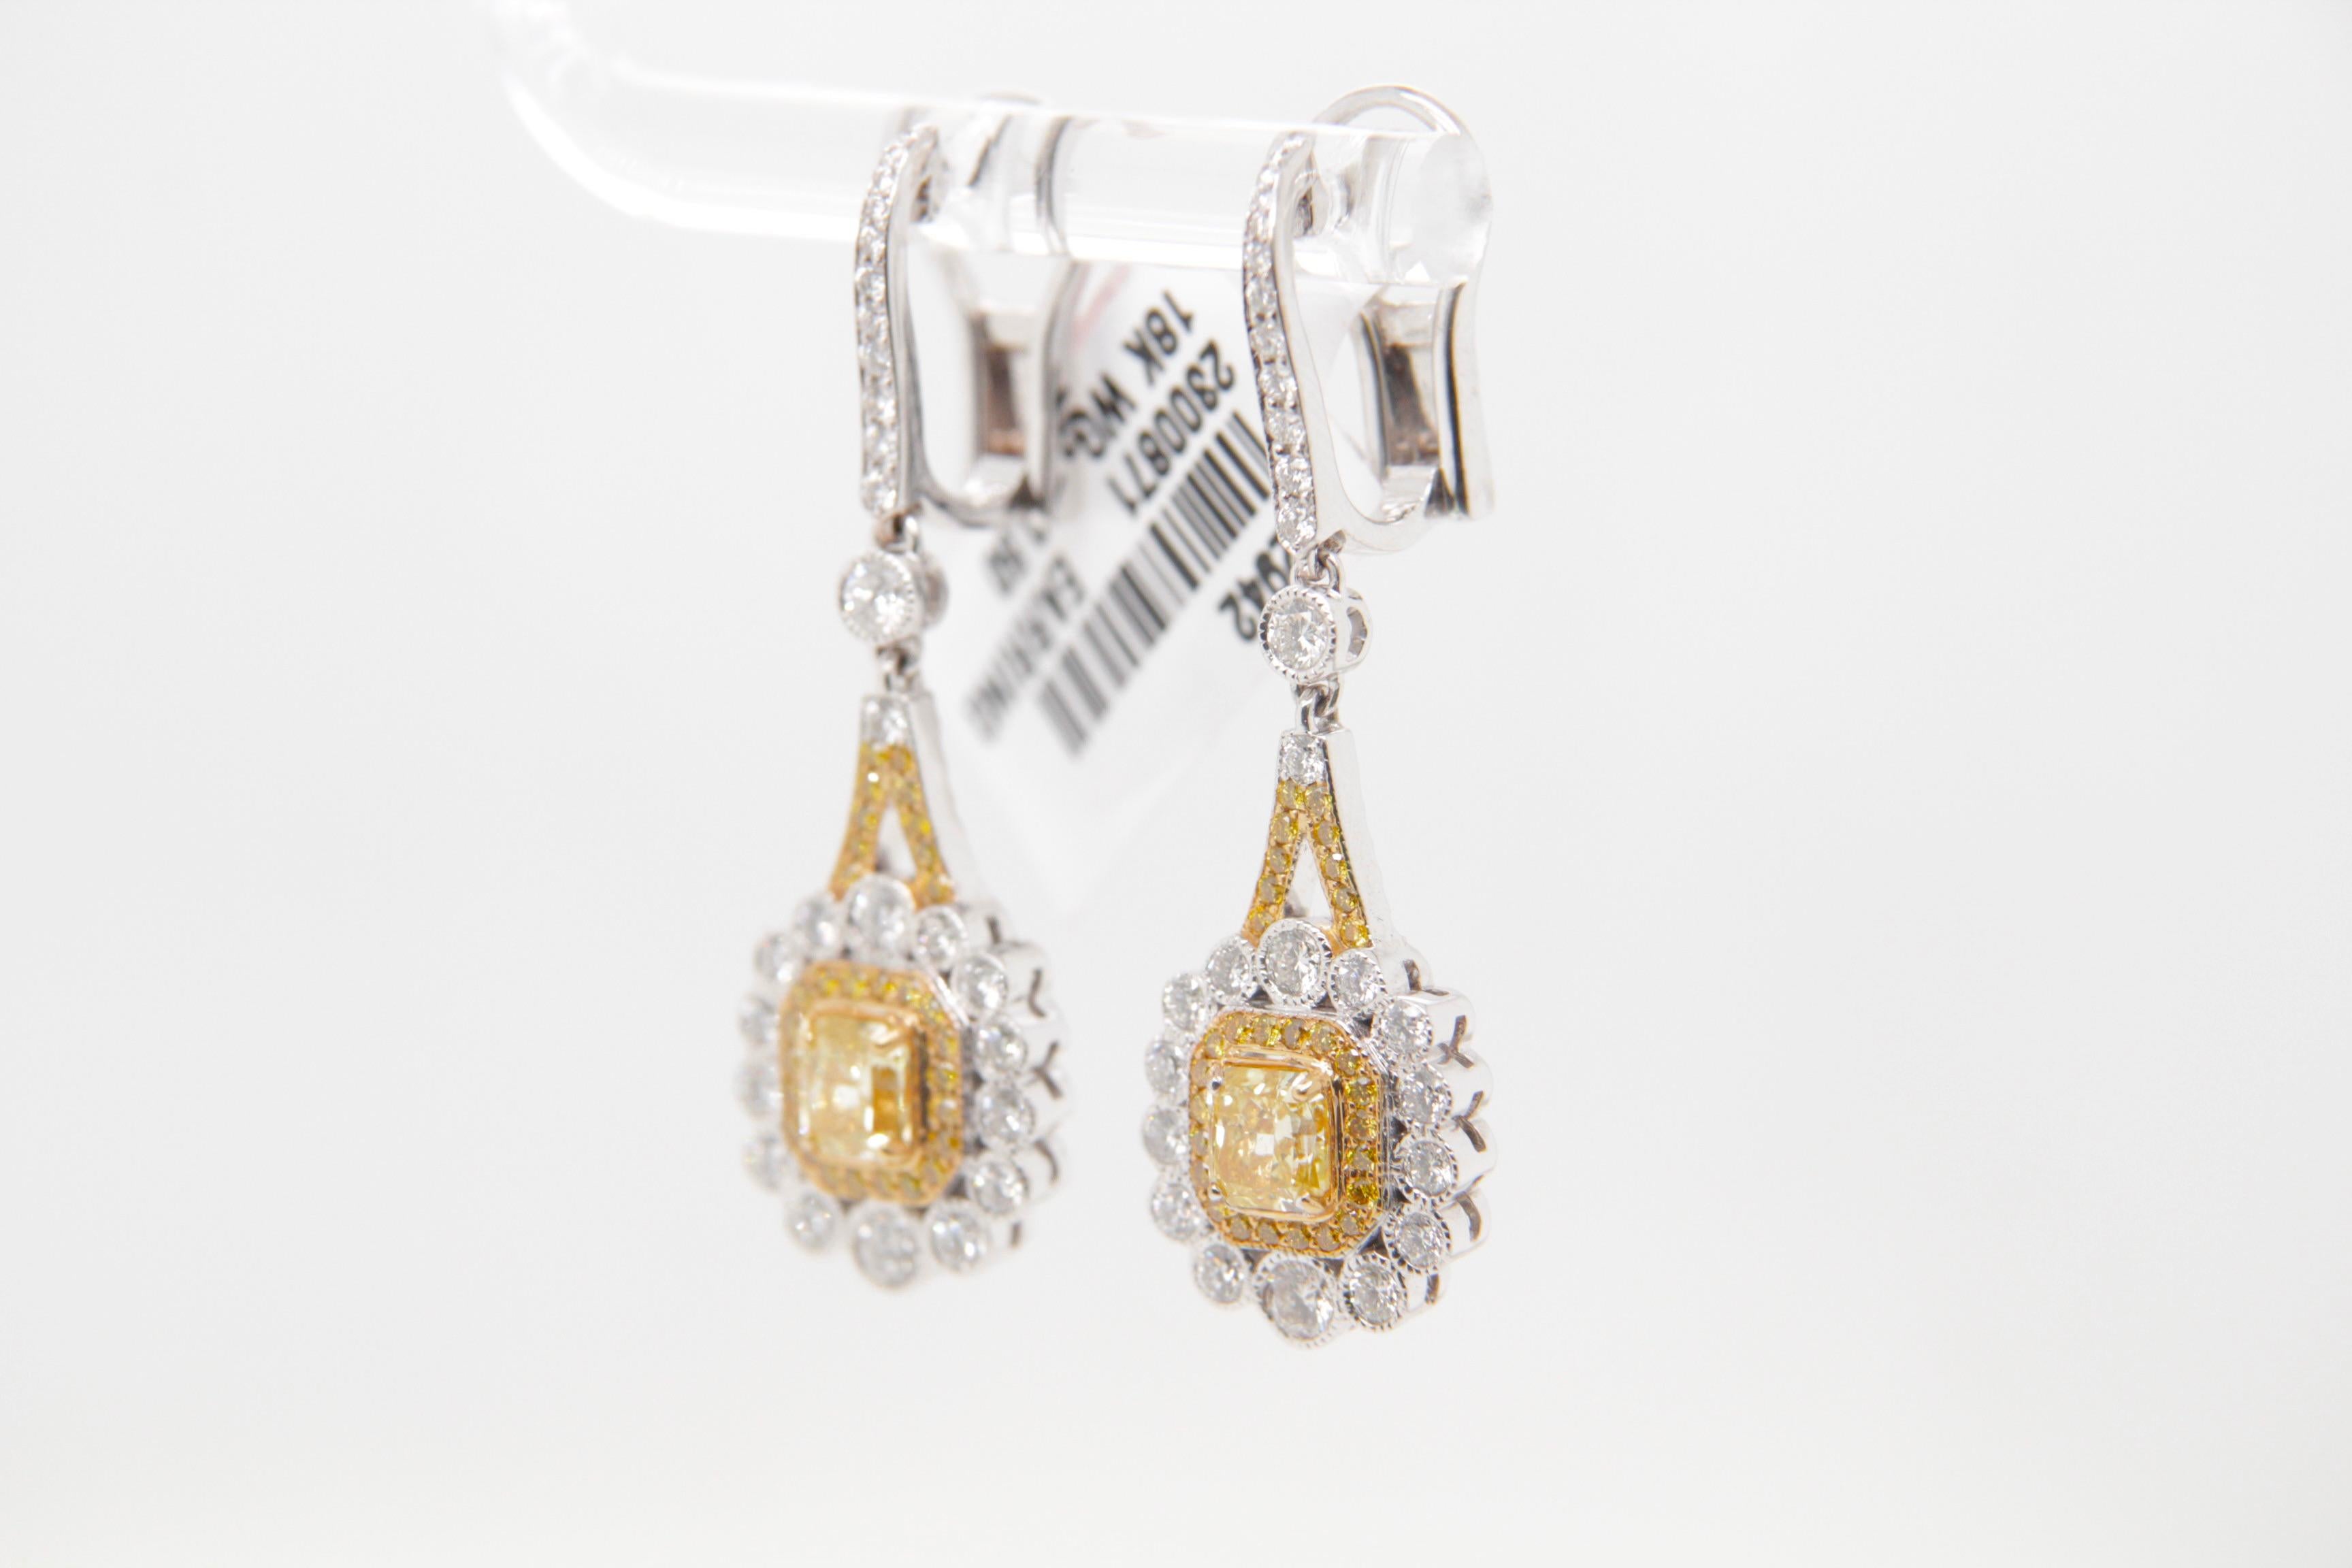 Diese bezaubernden Diamantohrringe von Rewa Jewelry sind eine harmonische Mischung aus Raffinesse und Verführung und stehen für das Engagement der Marke für exquisite Handwerkskunst und zeitloses Design.

Das Herzstück dieser Ohrringe sind zwei